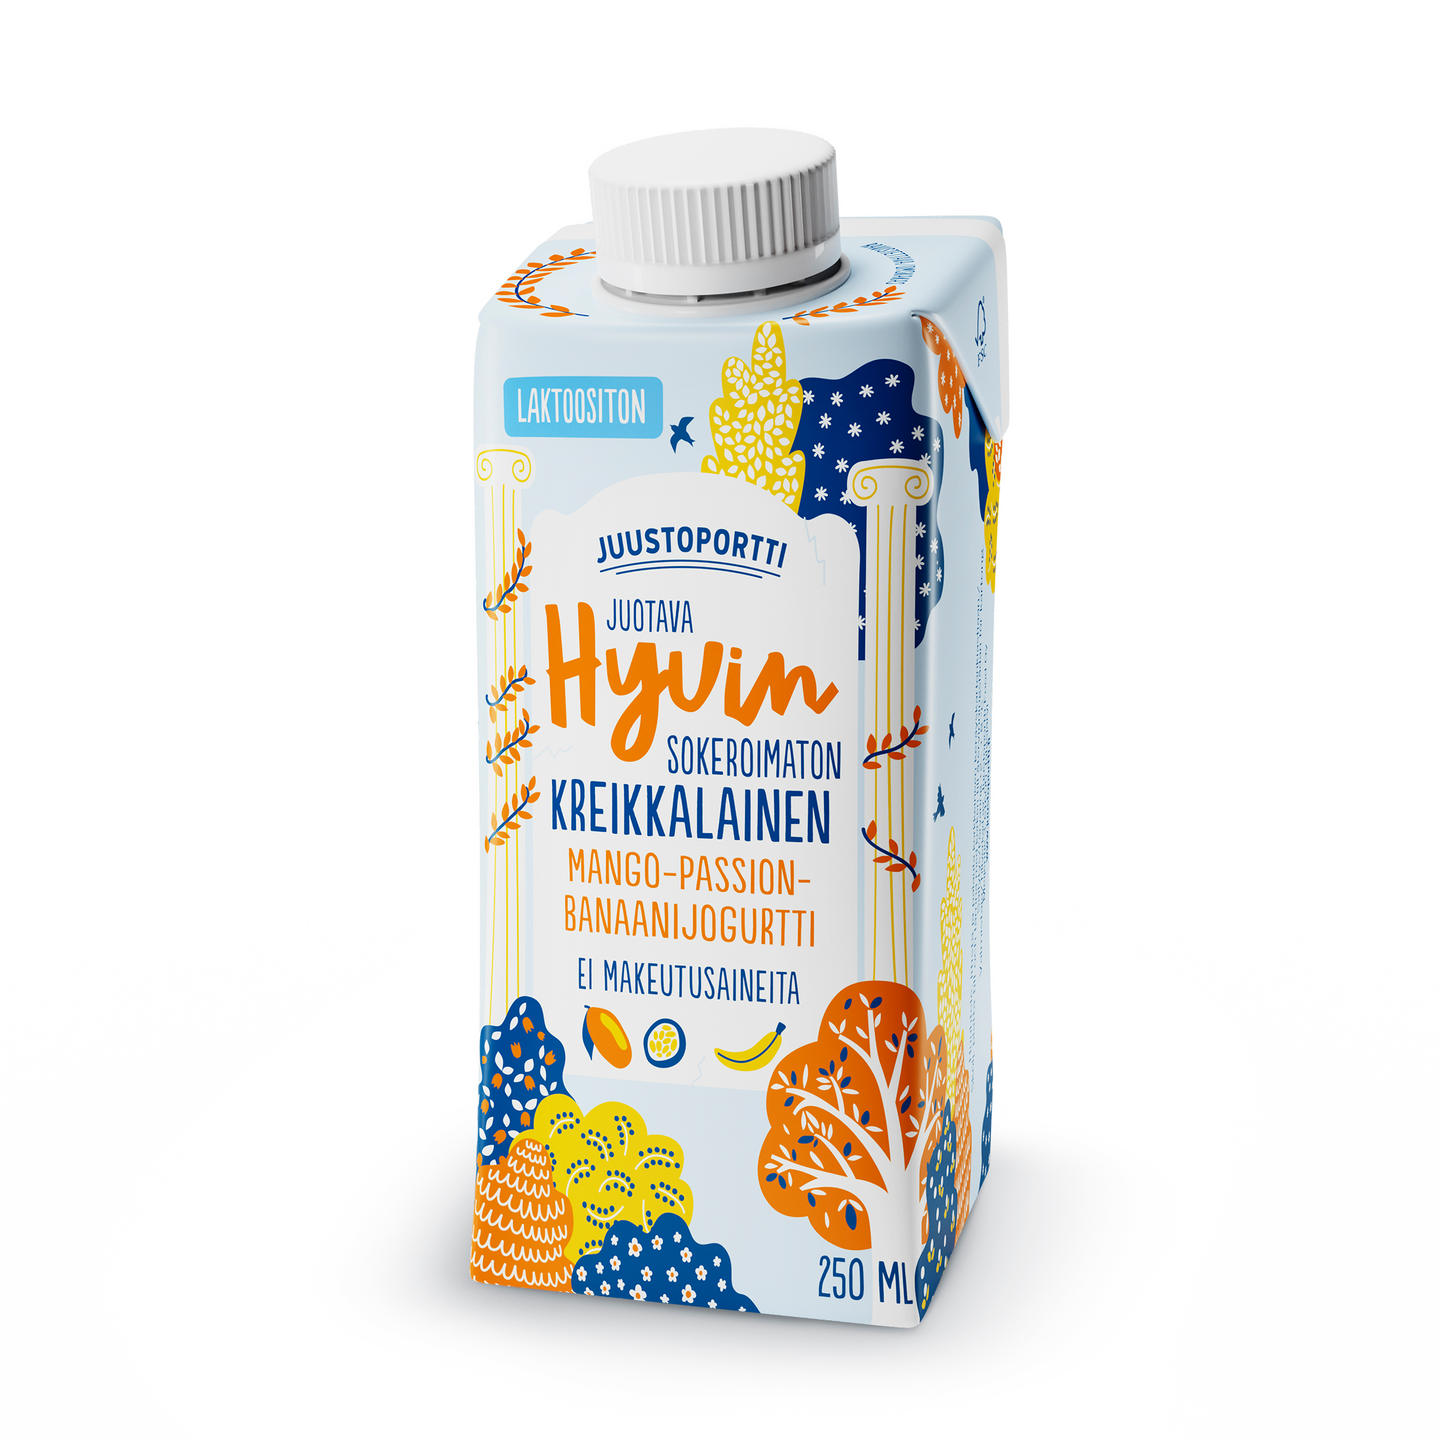 Juustoportti Hyvin sokeroimaton kreikkalainen juotava jogurtti 250ml mango-passion-banaani laktoosit